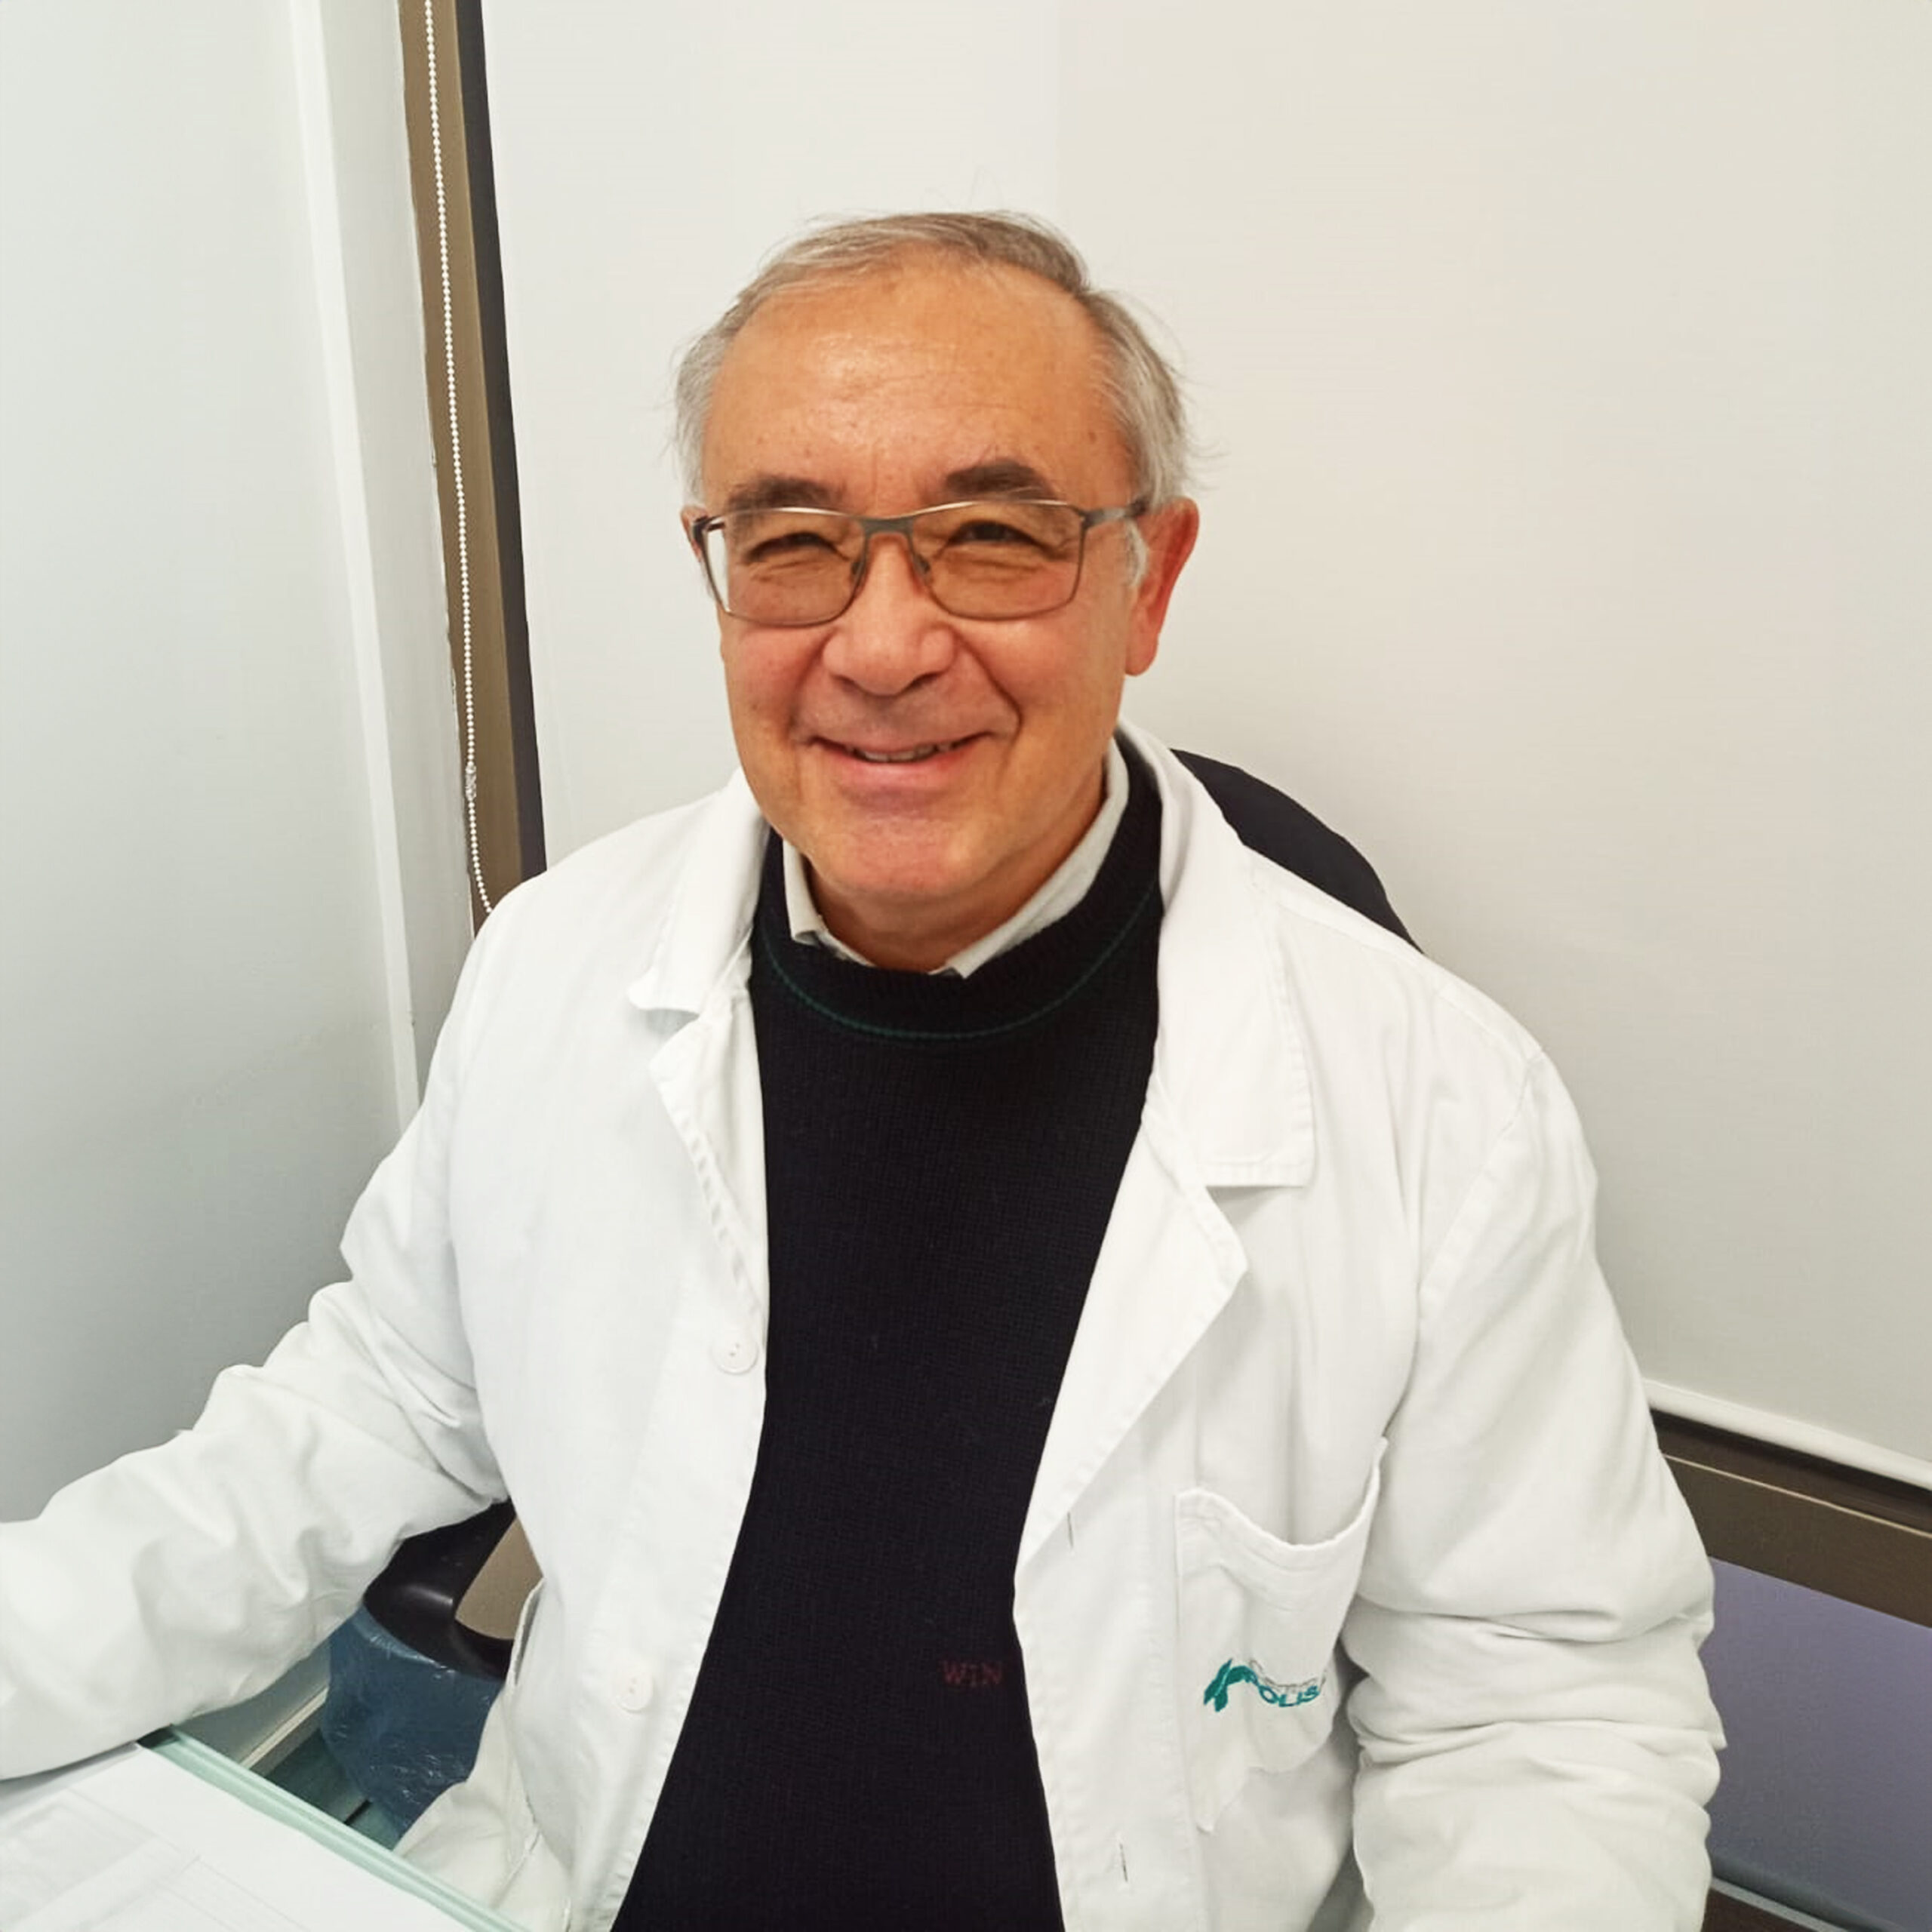 Dott. Paone Giovanni Ecografista Centro medico Polisalute Cologno Monzese (Milano)